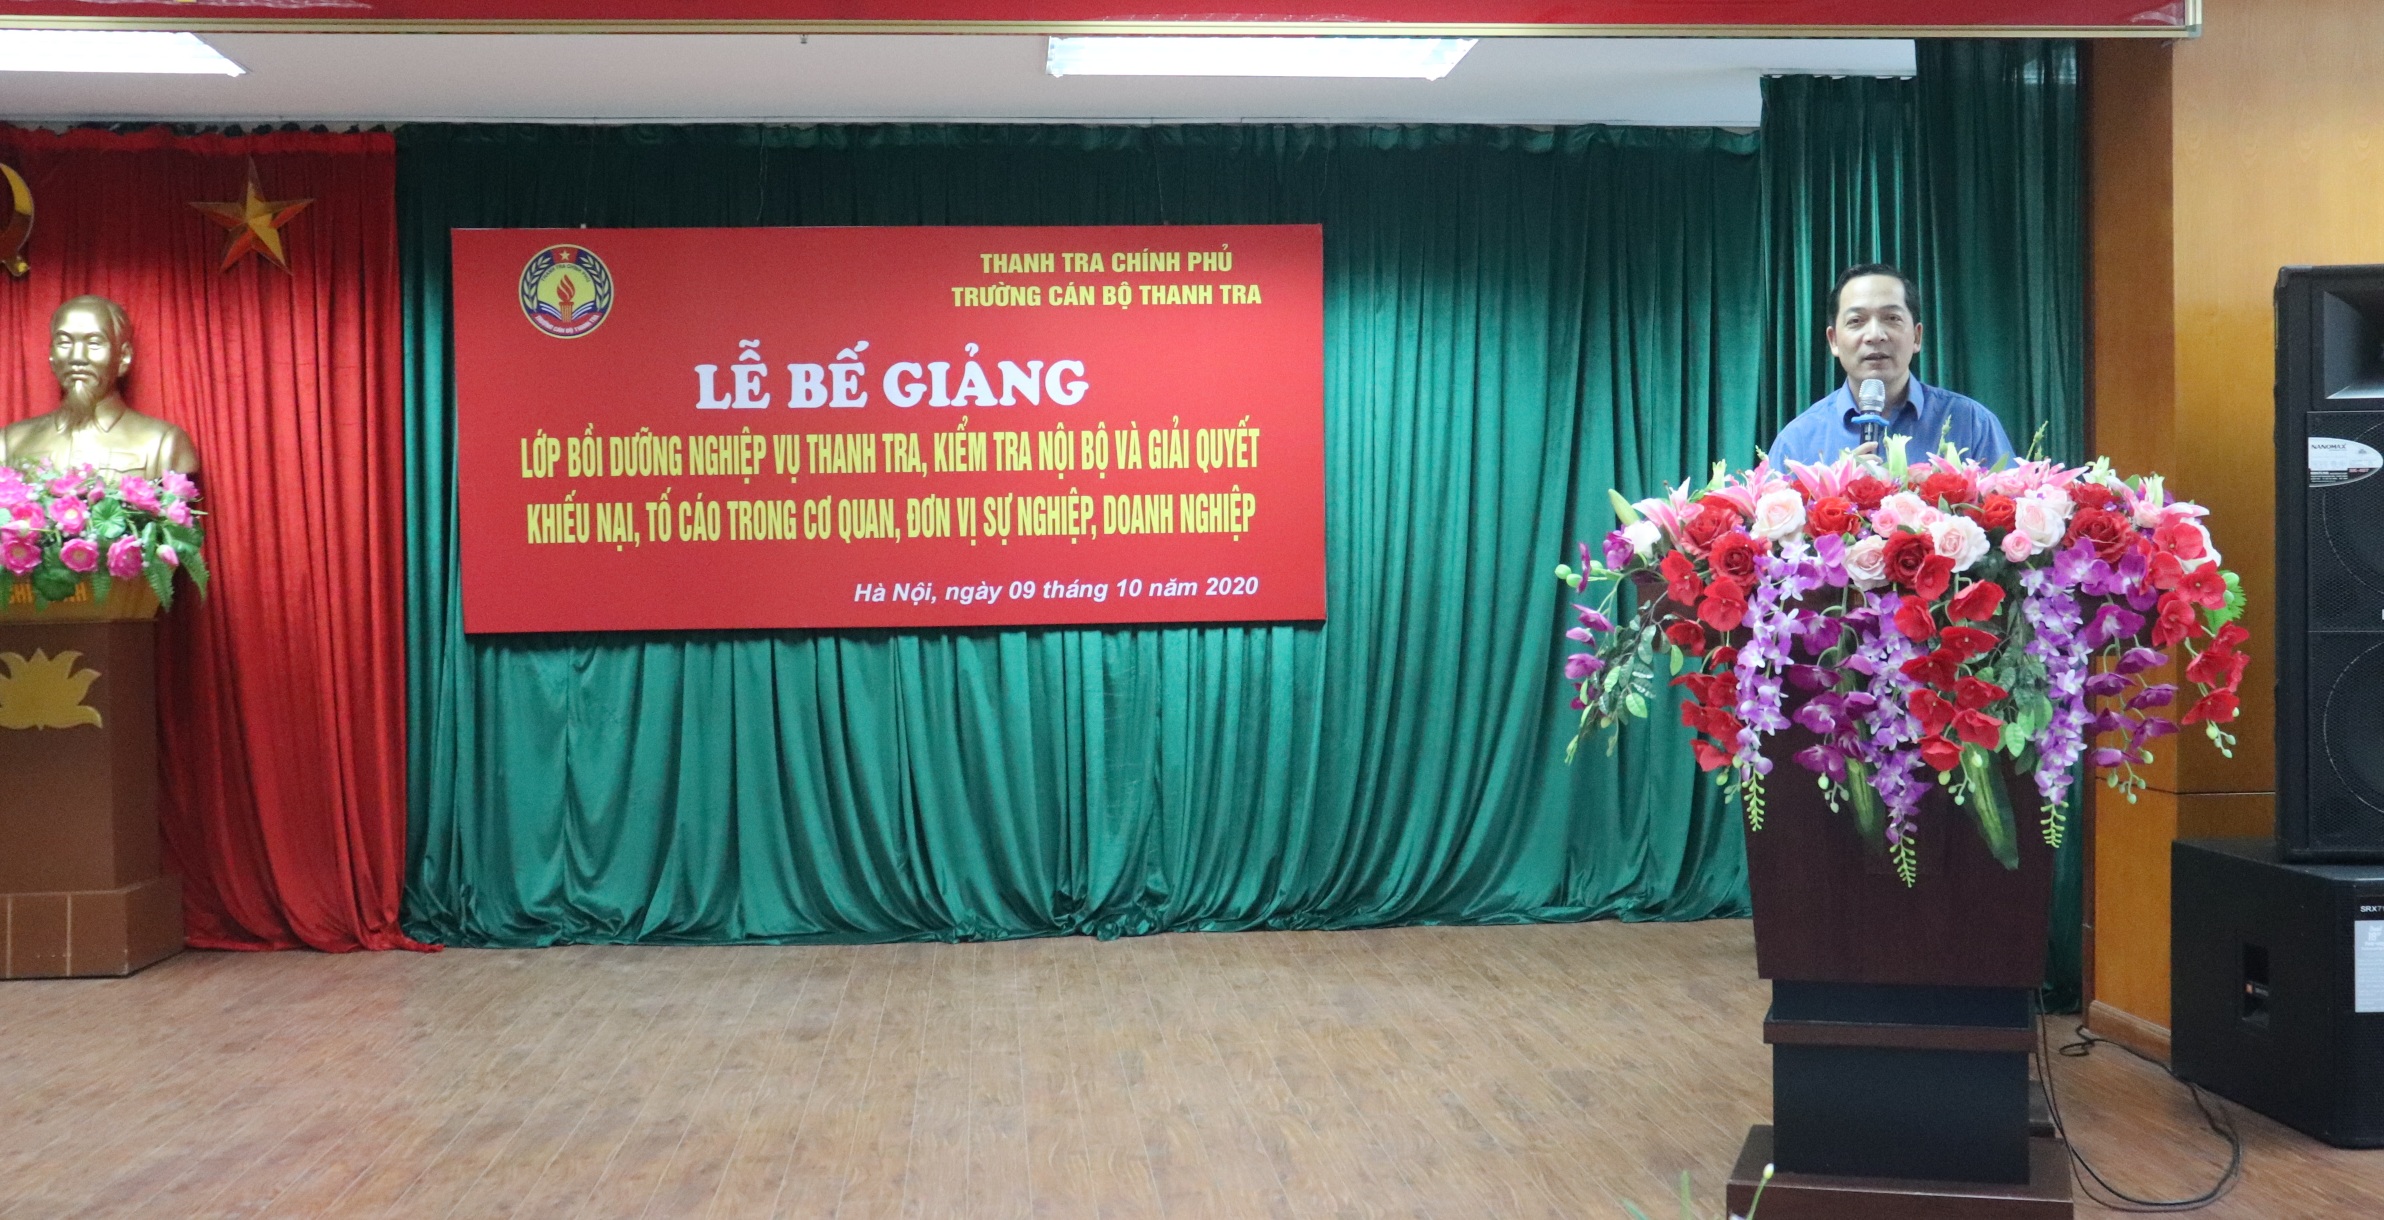 TS Nguyễn Huy Hoàng TTVCC Phó Hiệu trưởng Trg CBTT phát biểu bế giảng lớp học